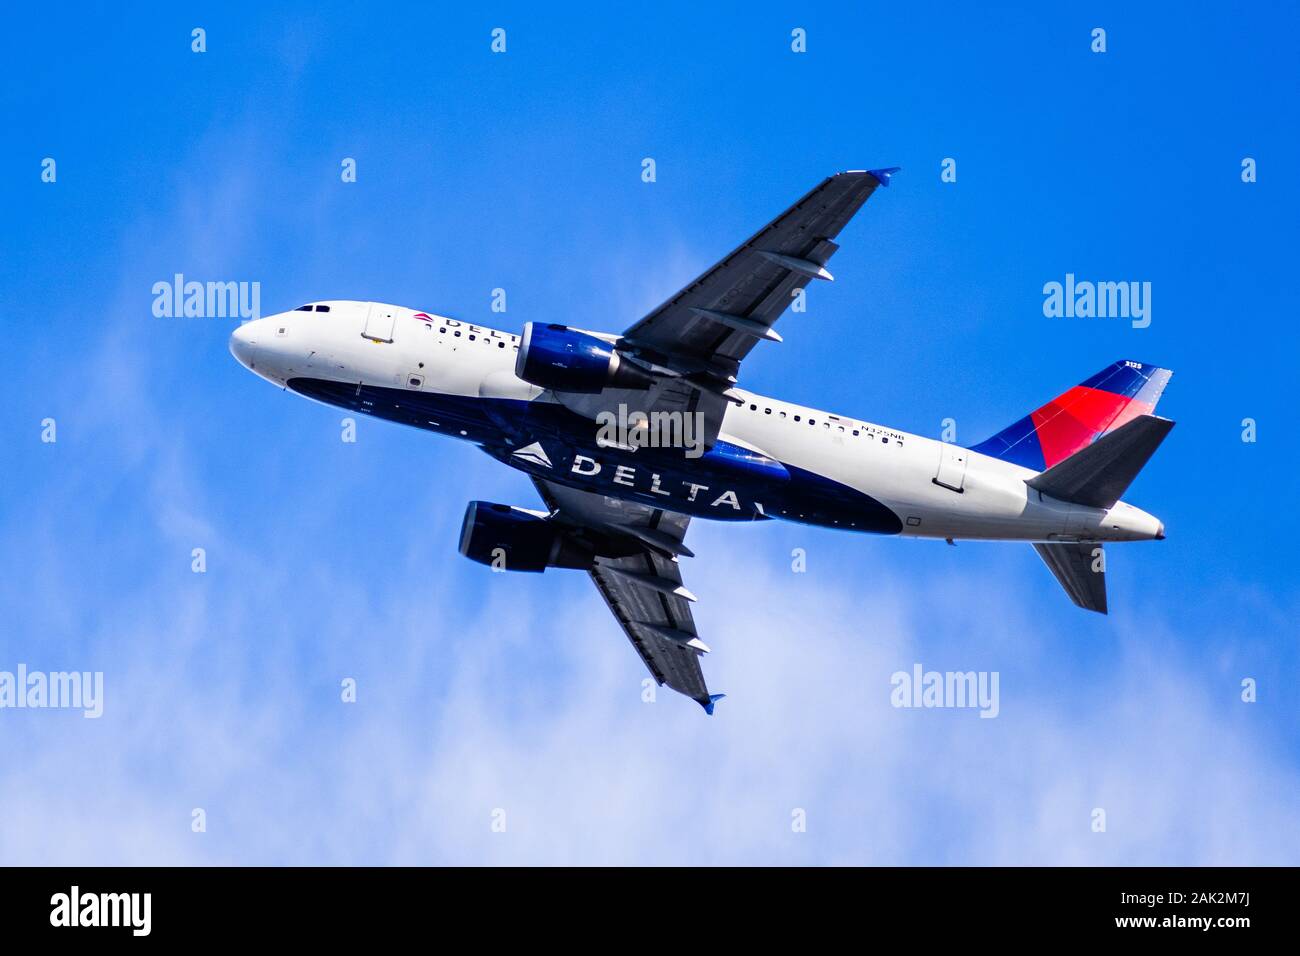 Dec 27, 2019 San Jose / CA / USA - Delta Airlines avion en vol ; le Logo Delta visible sur l'avion ; les bas-fond de ciel bleu Banque D'Images